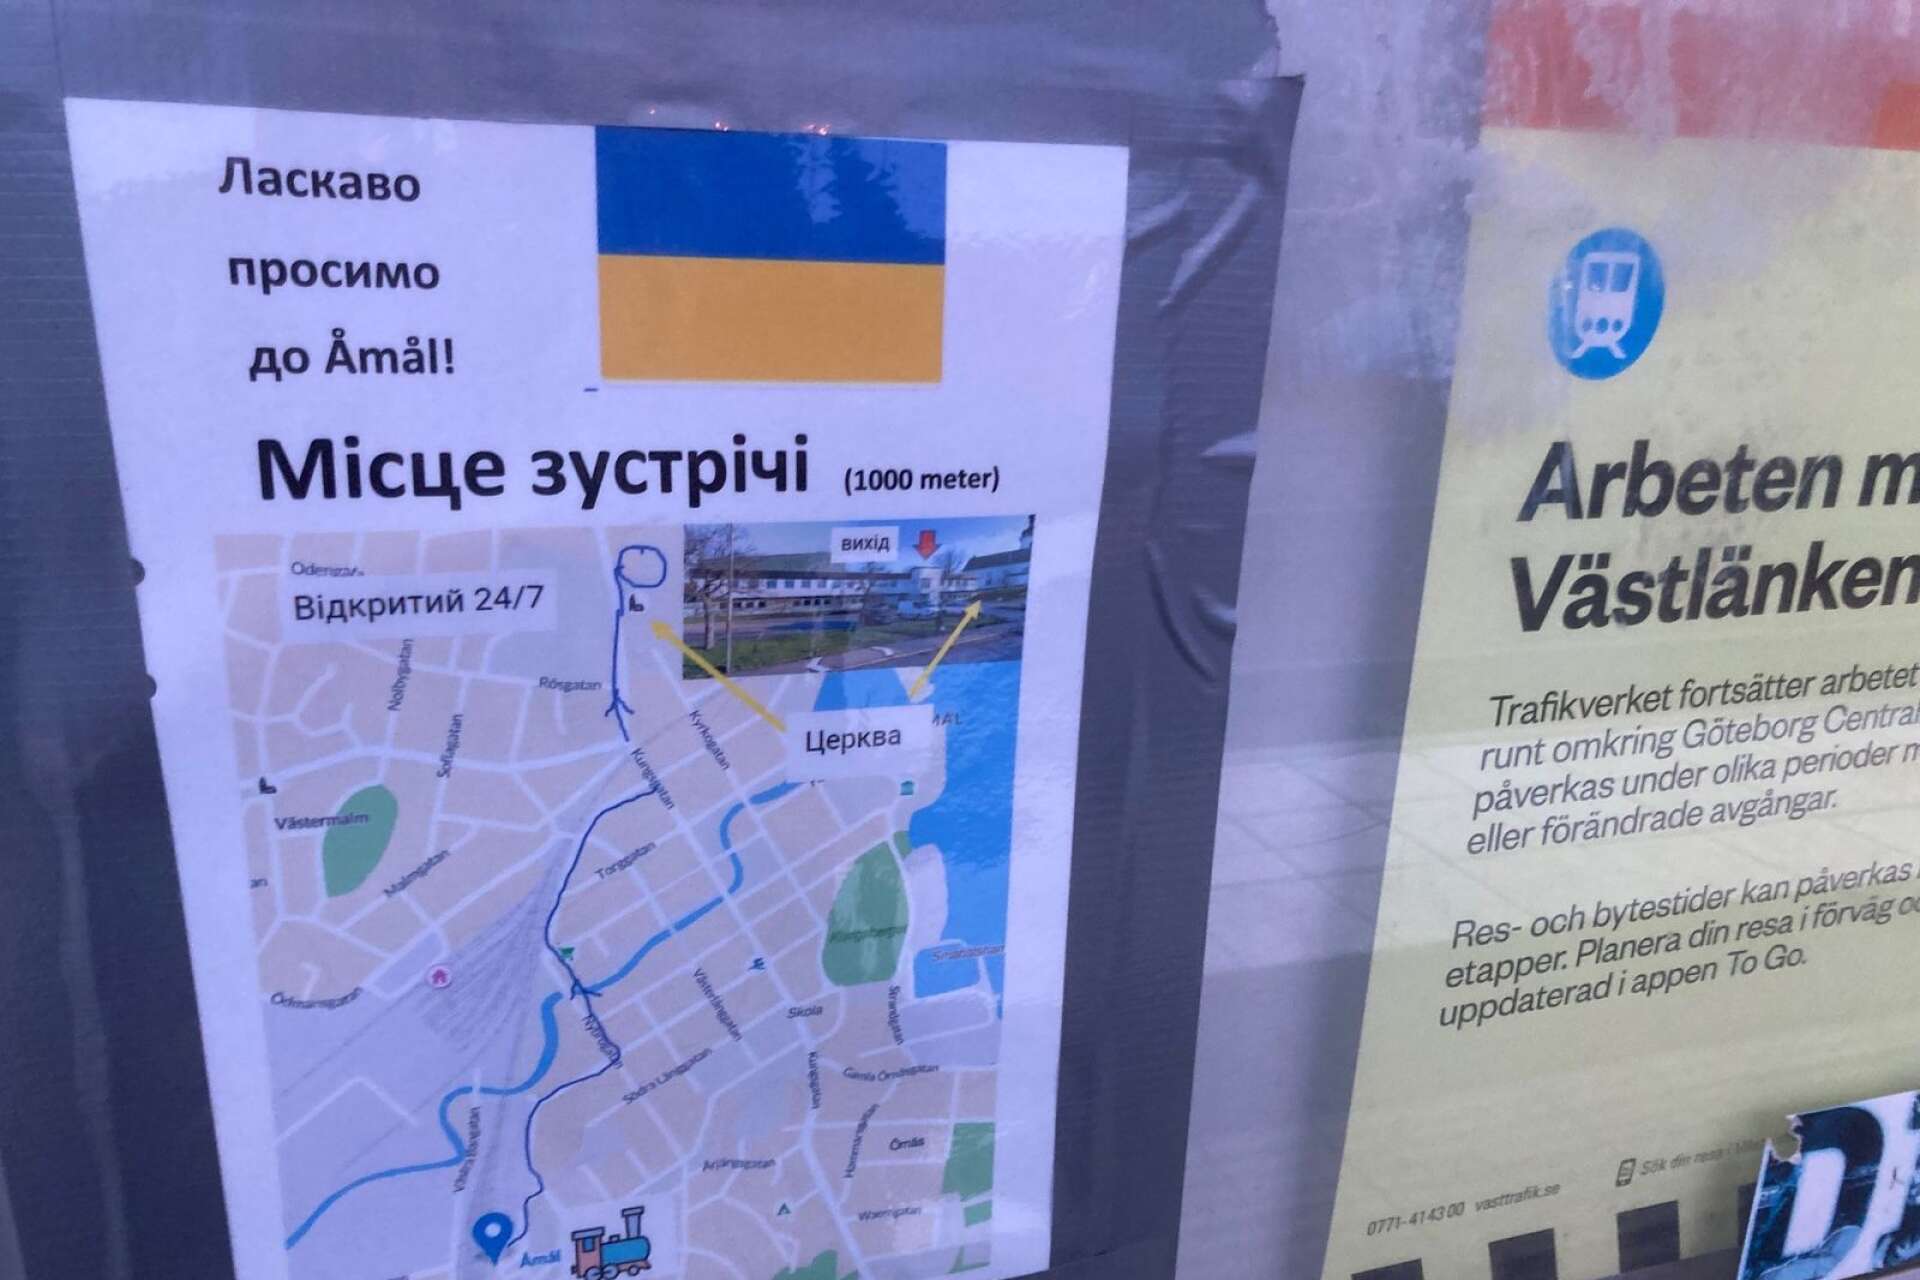 Välkommen till Åmål! står det på ukrainska vid järnvägsstationen i Åmål. Skylten visar vägen till mötesplatsen i församlingshemmet med ”öppet dygnet runt”.